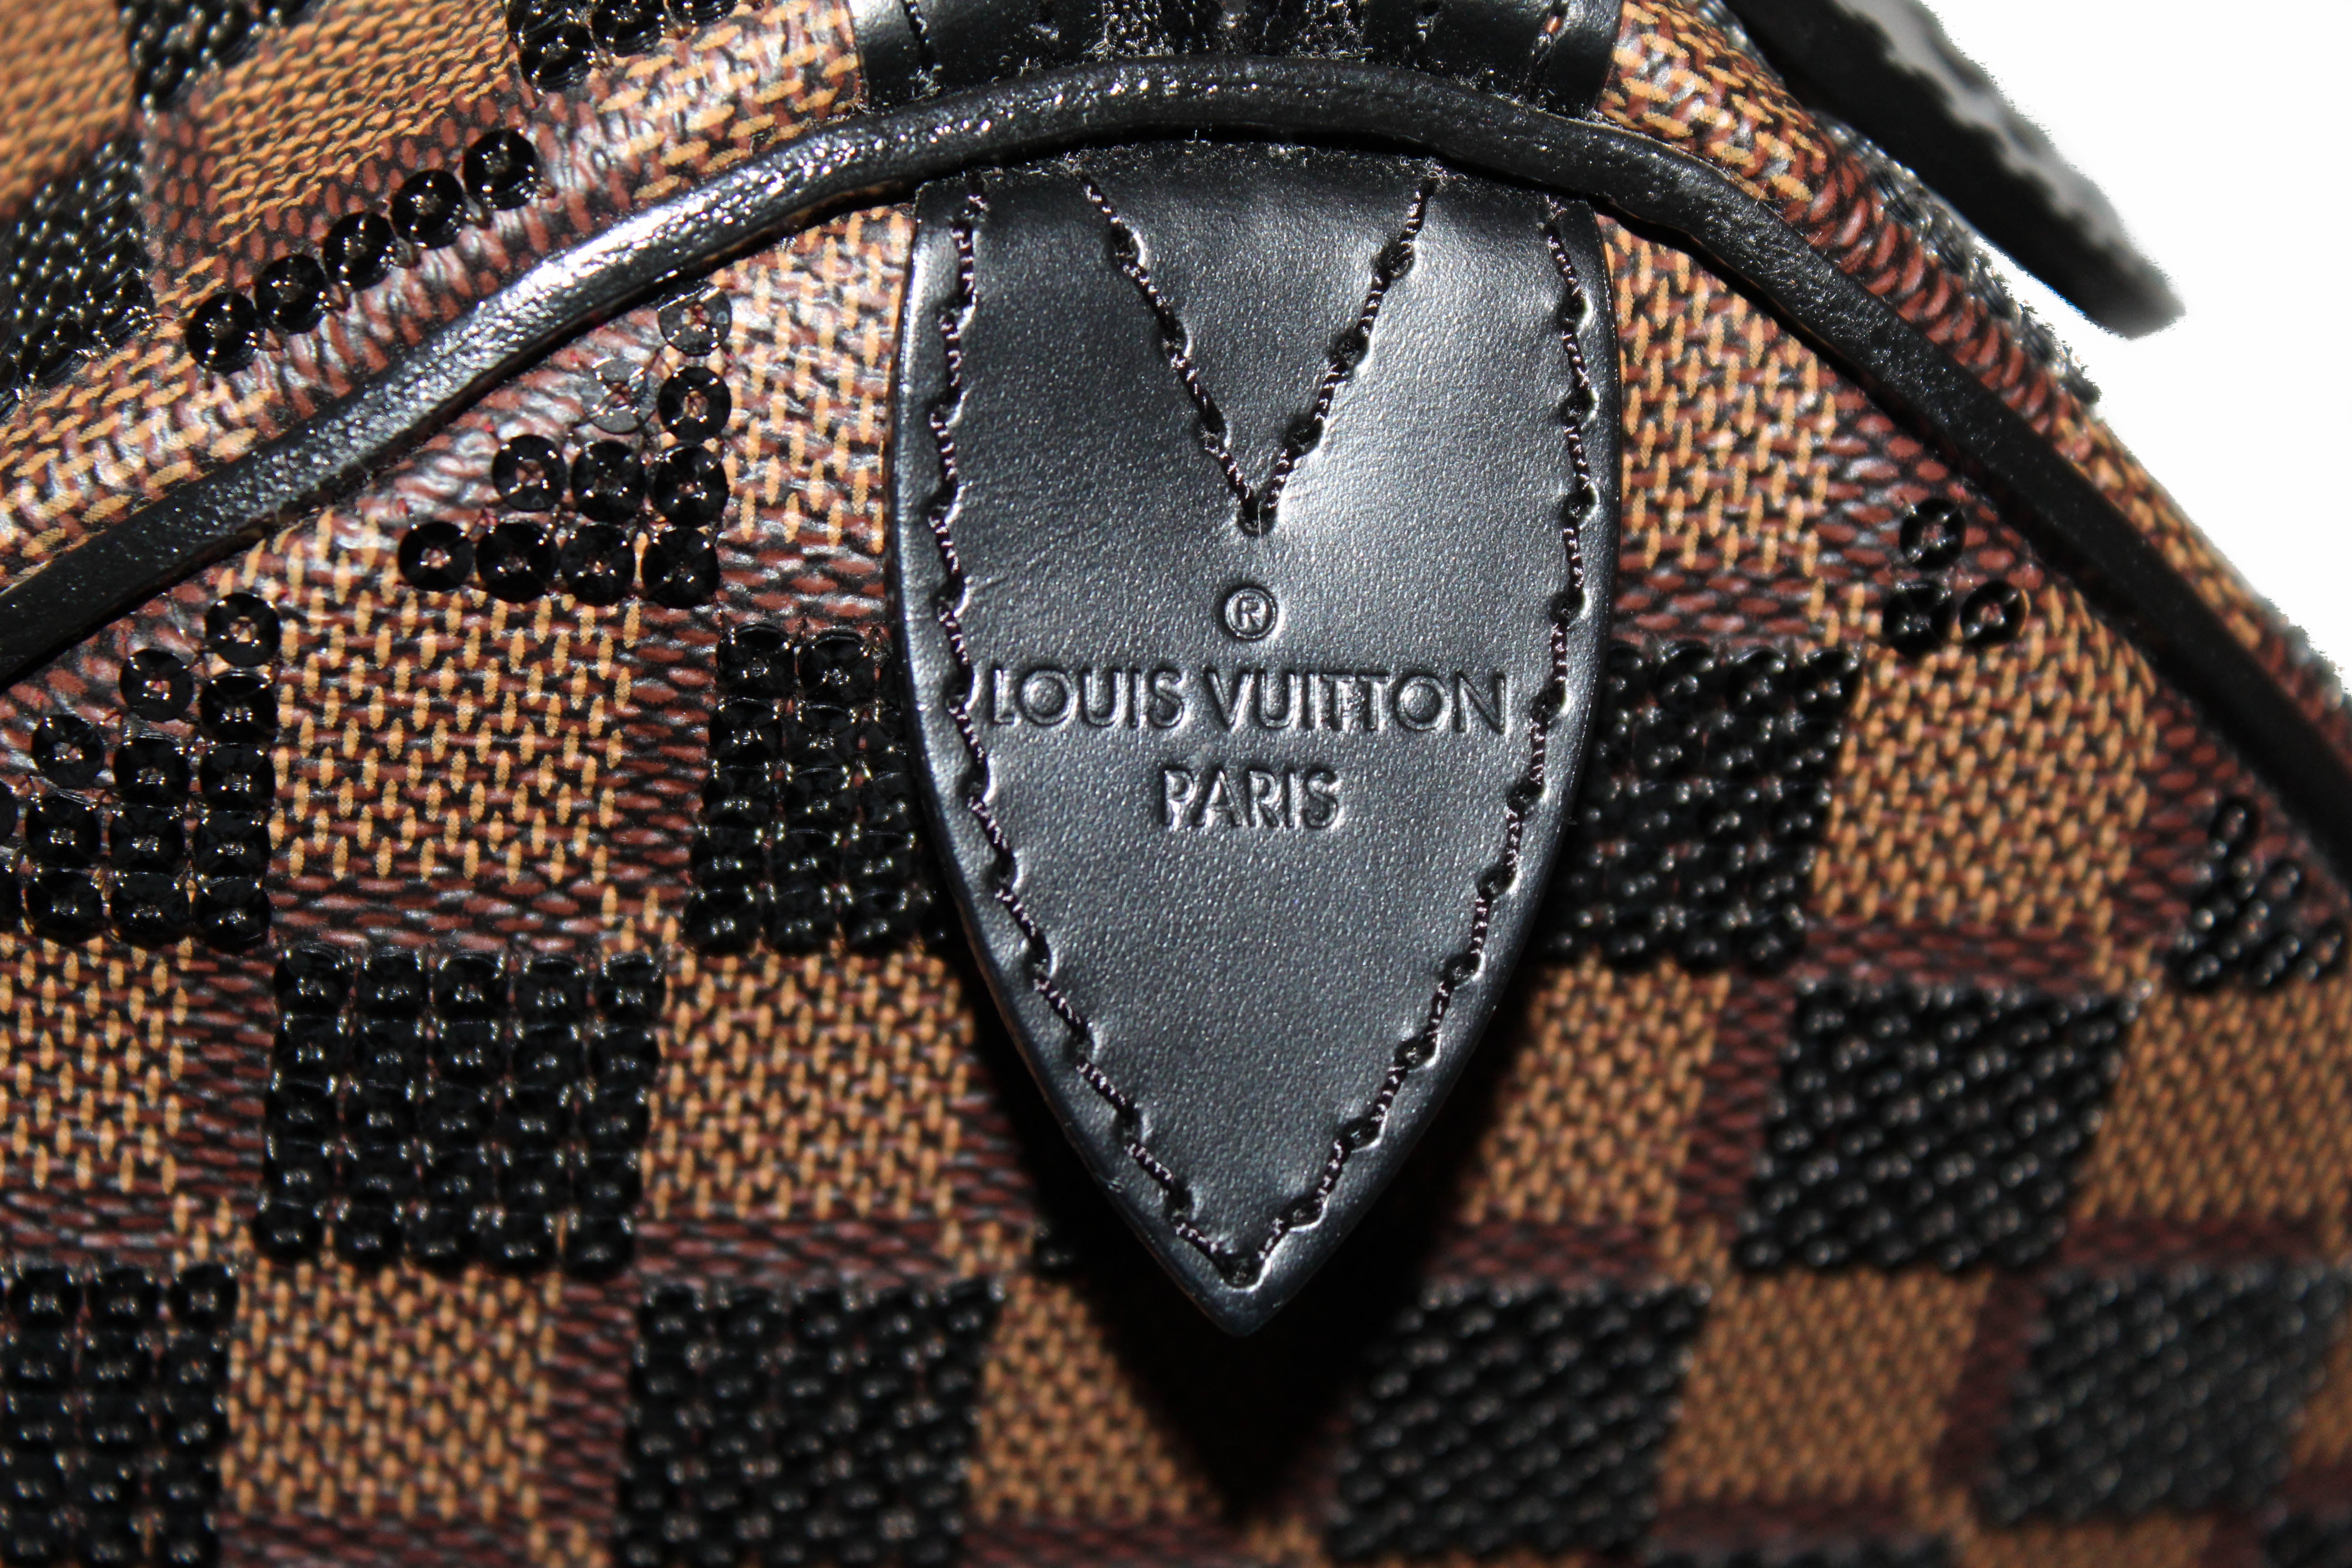 Louis Vuitton Black Damier Paillettes Speedy 30 Limited Edition Bag